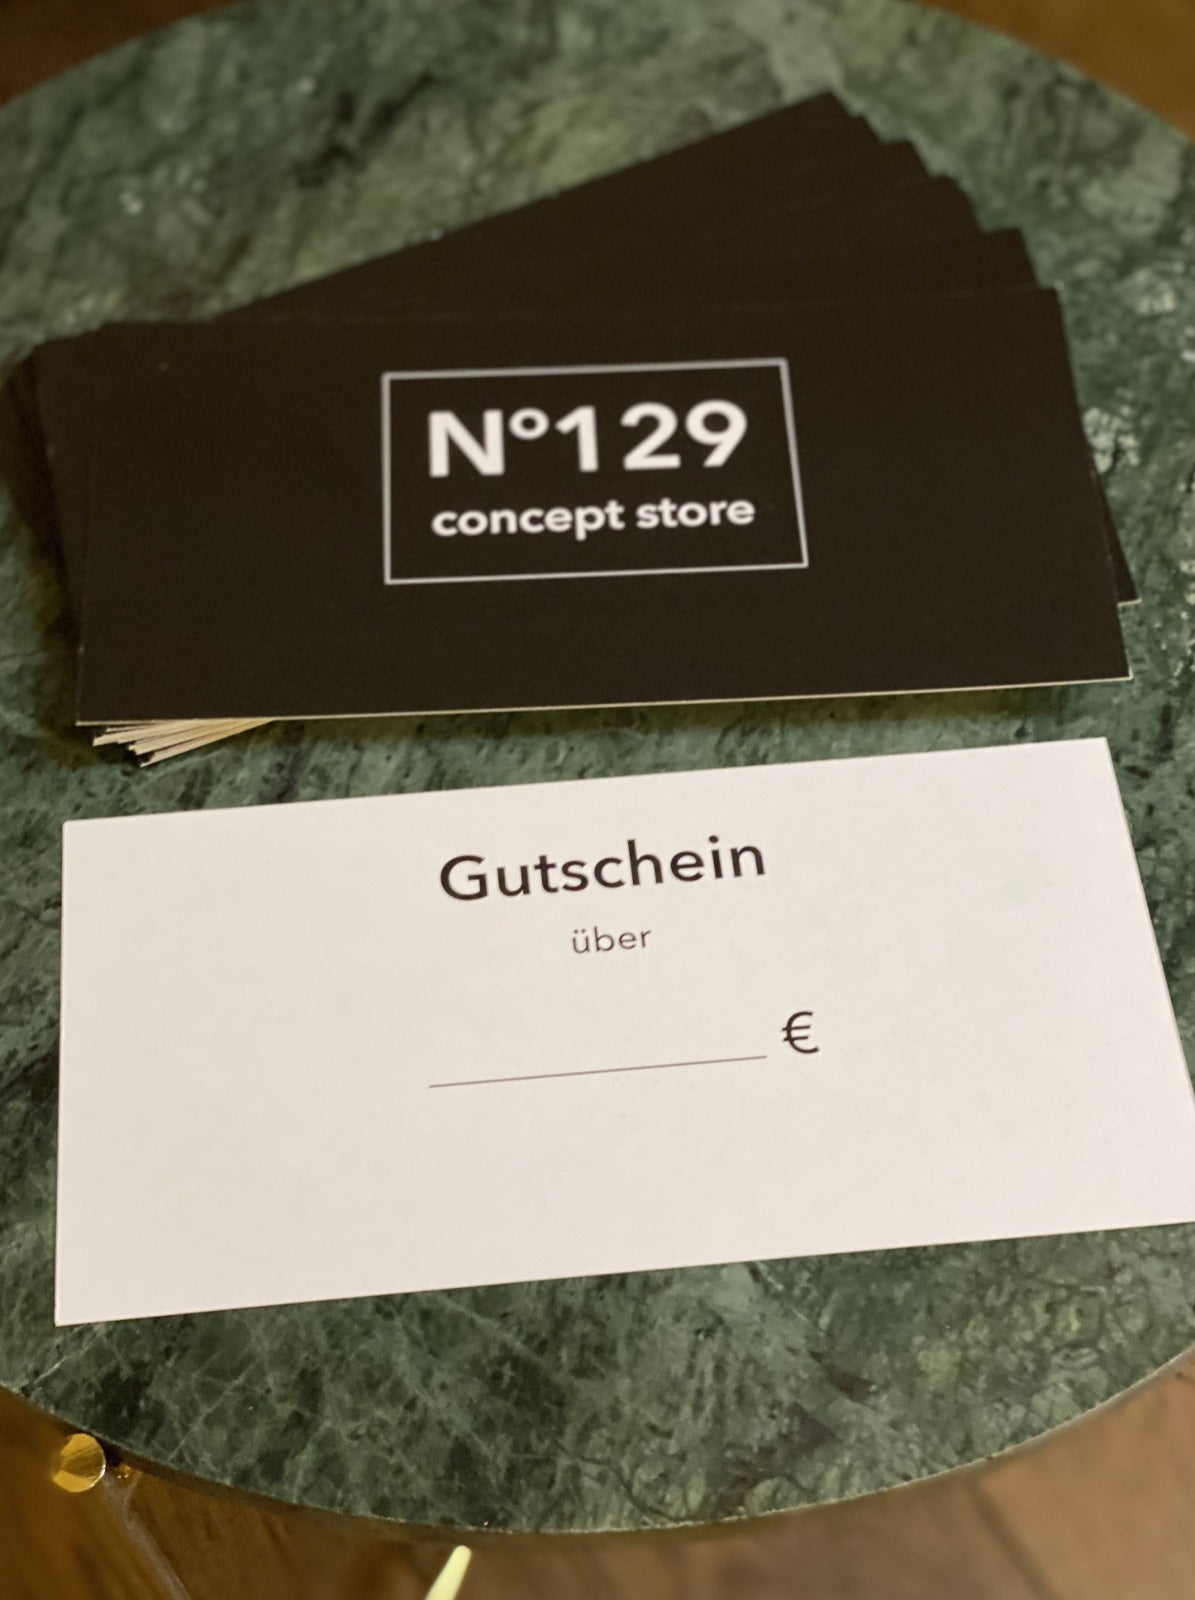 Gutschein by N°129